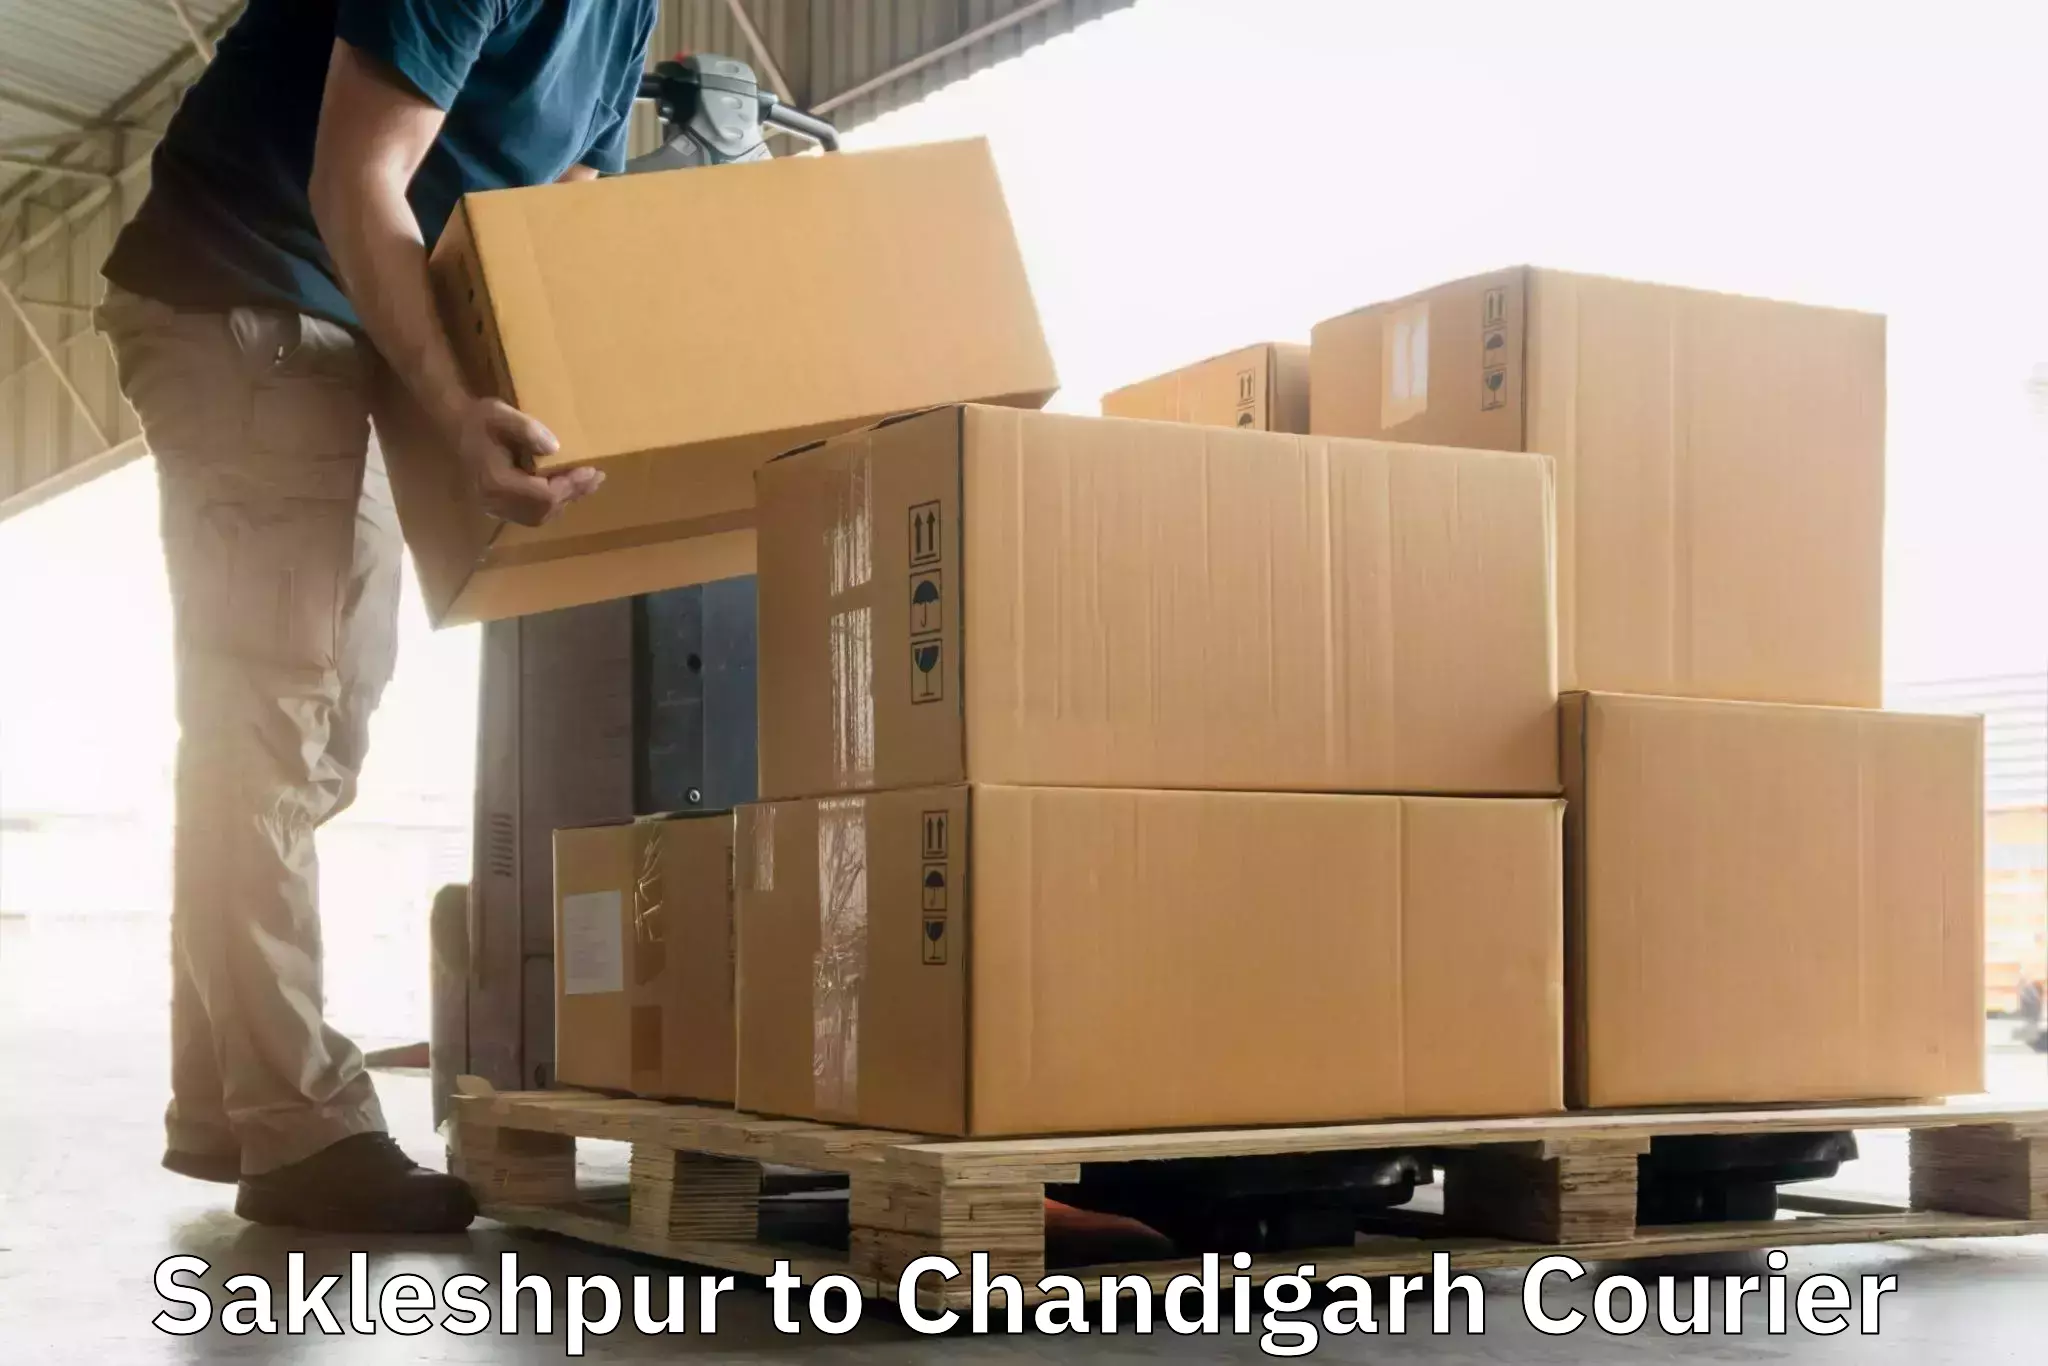 24-hour courier service Sakleshpur to Chandigarh